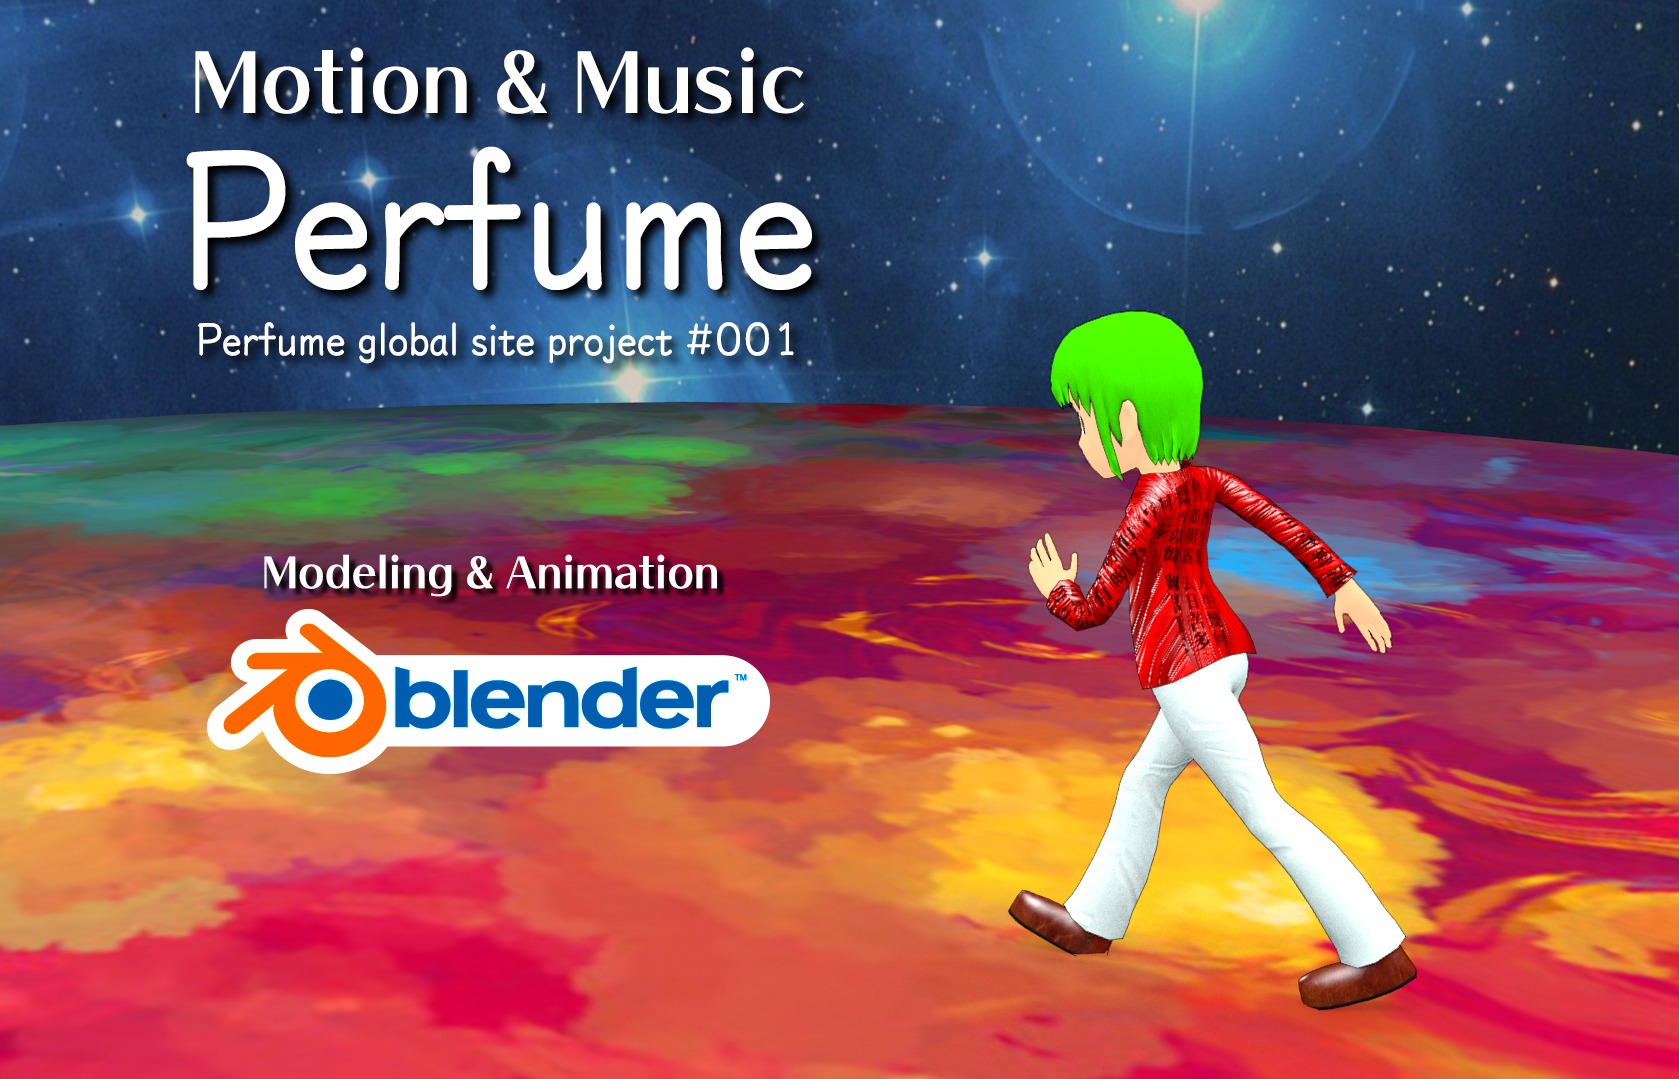 blender 3d animation too slow